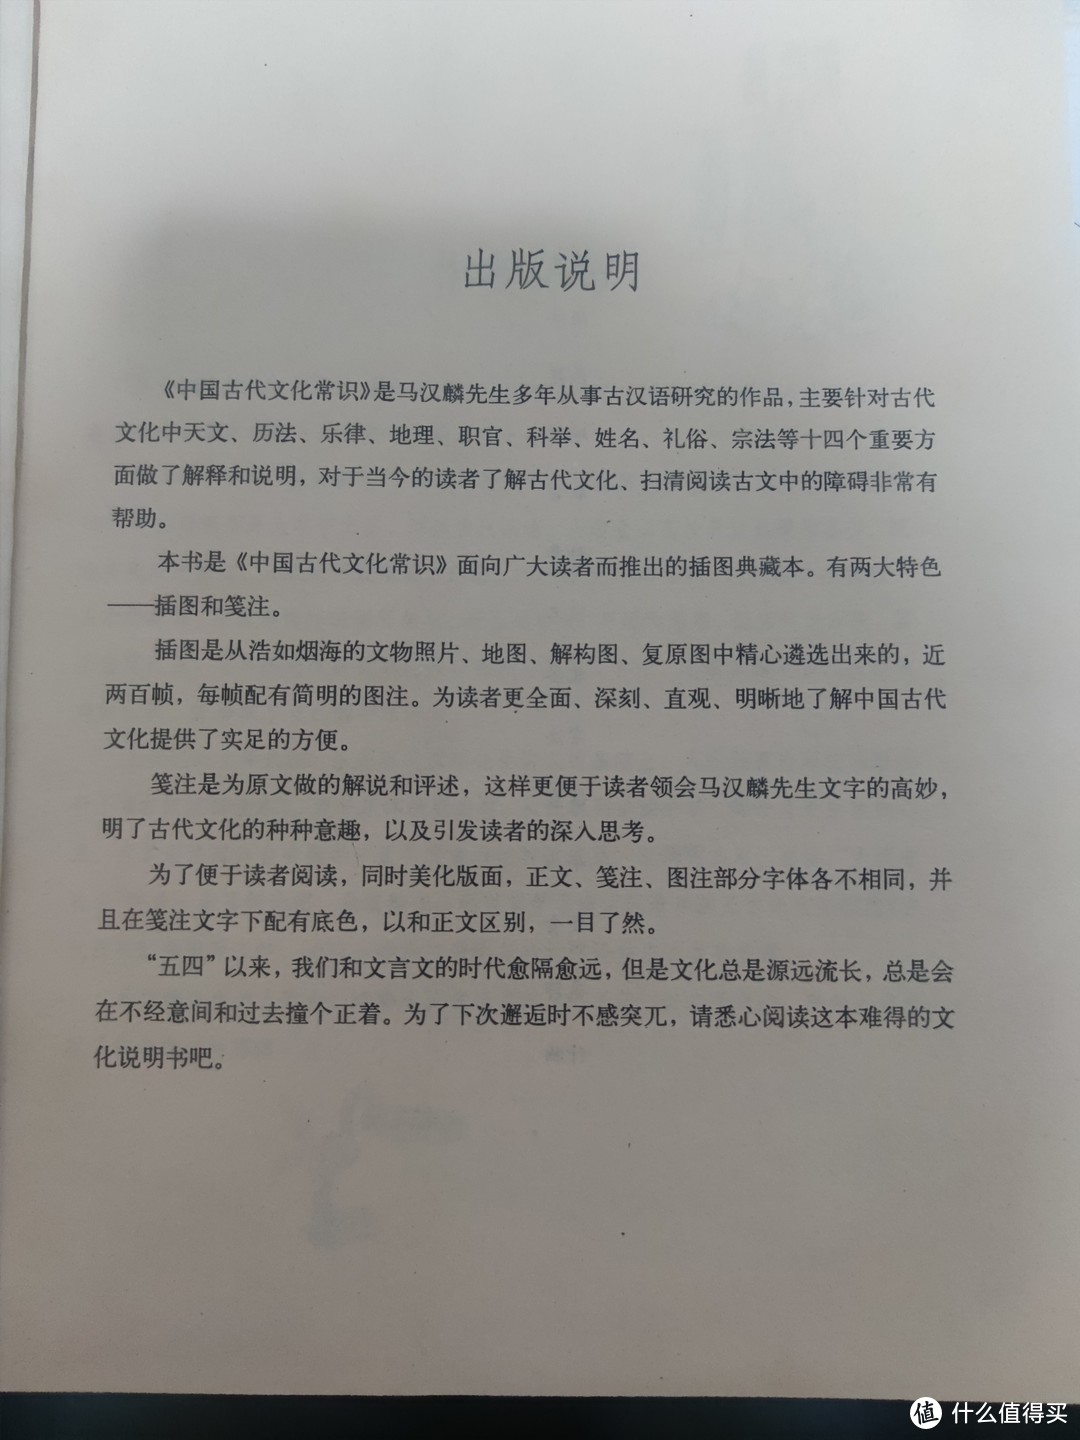 读懂中国古代文化常识的好书